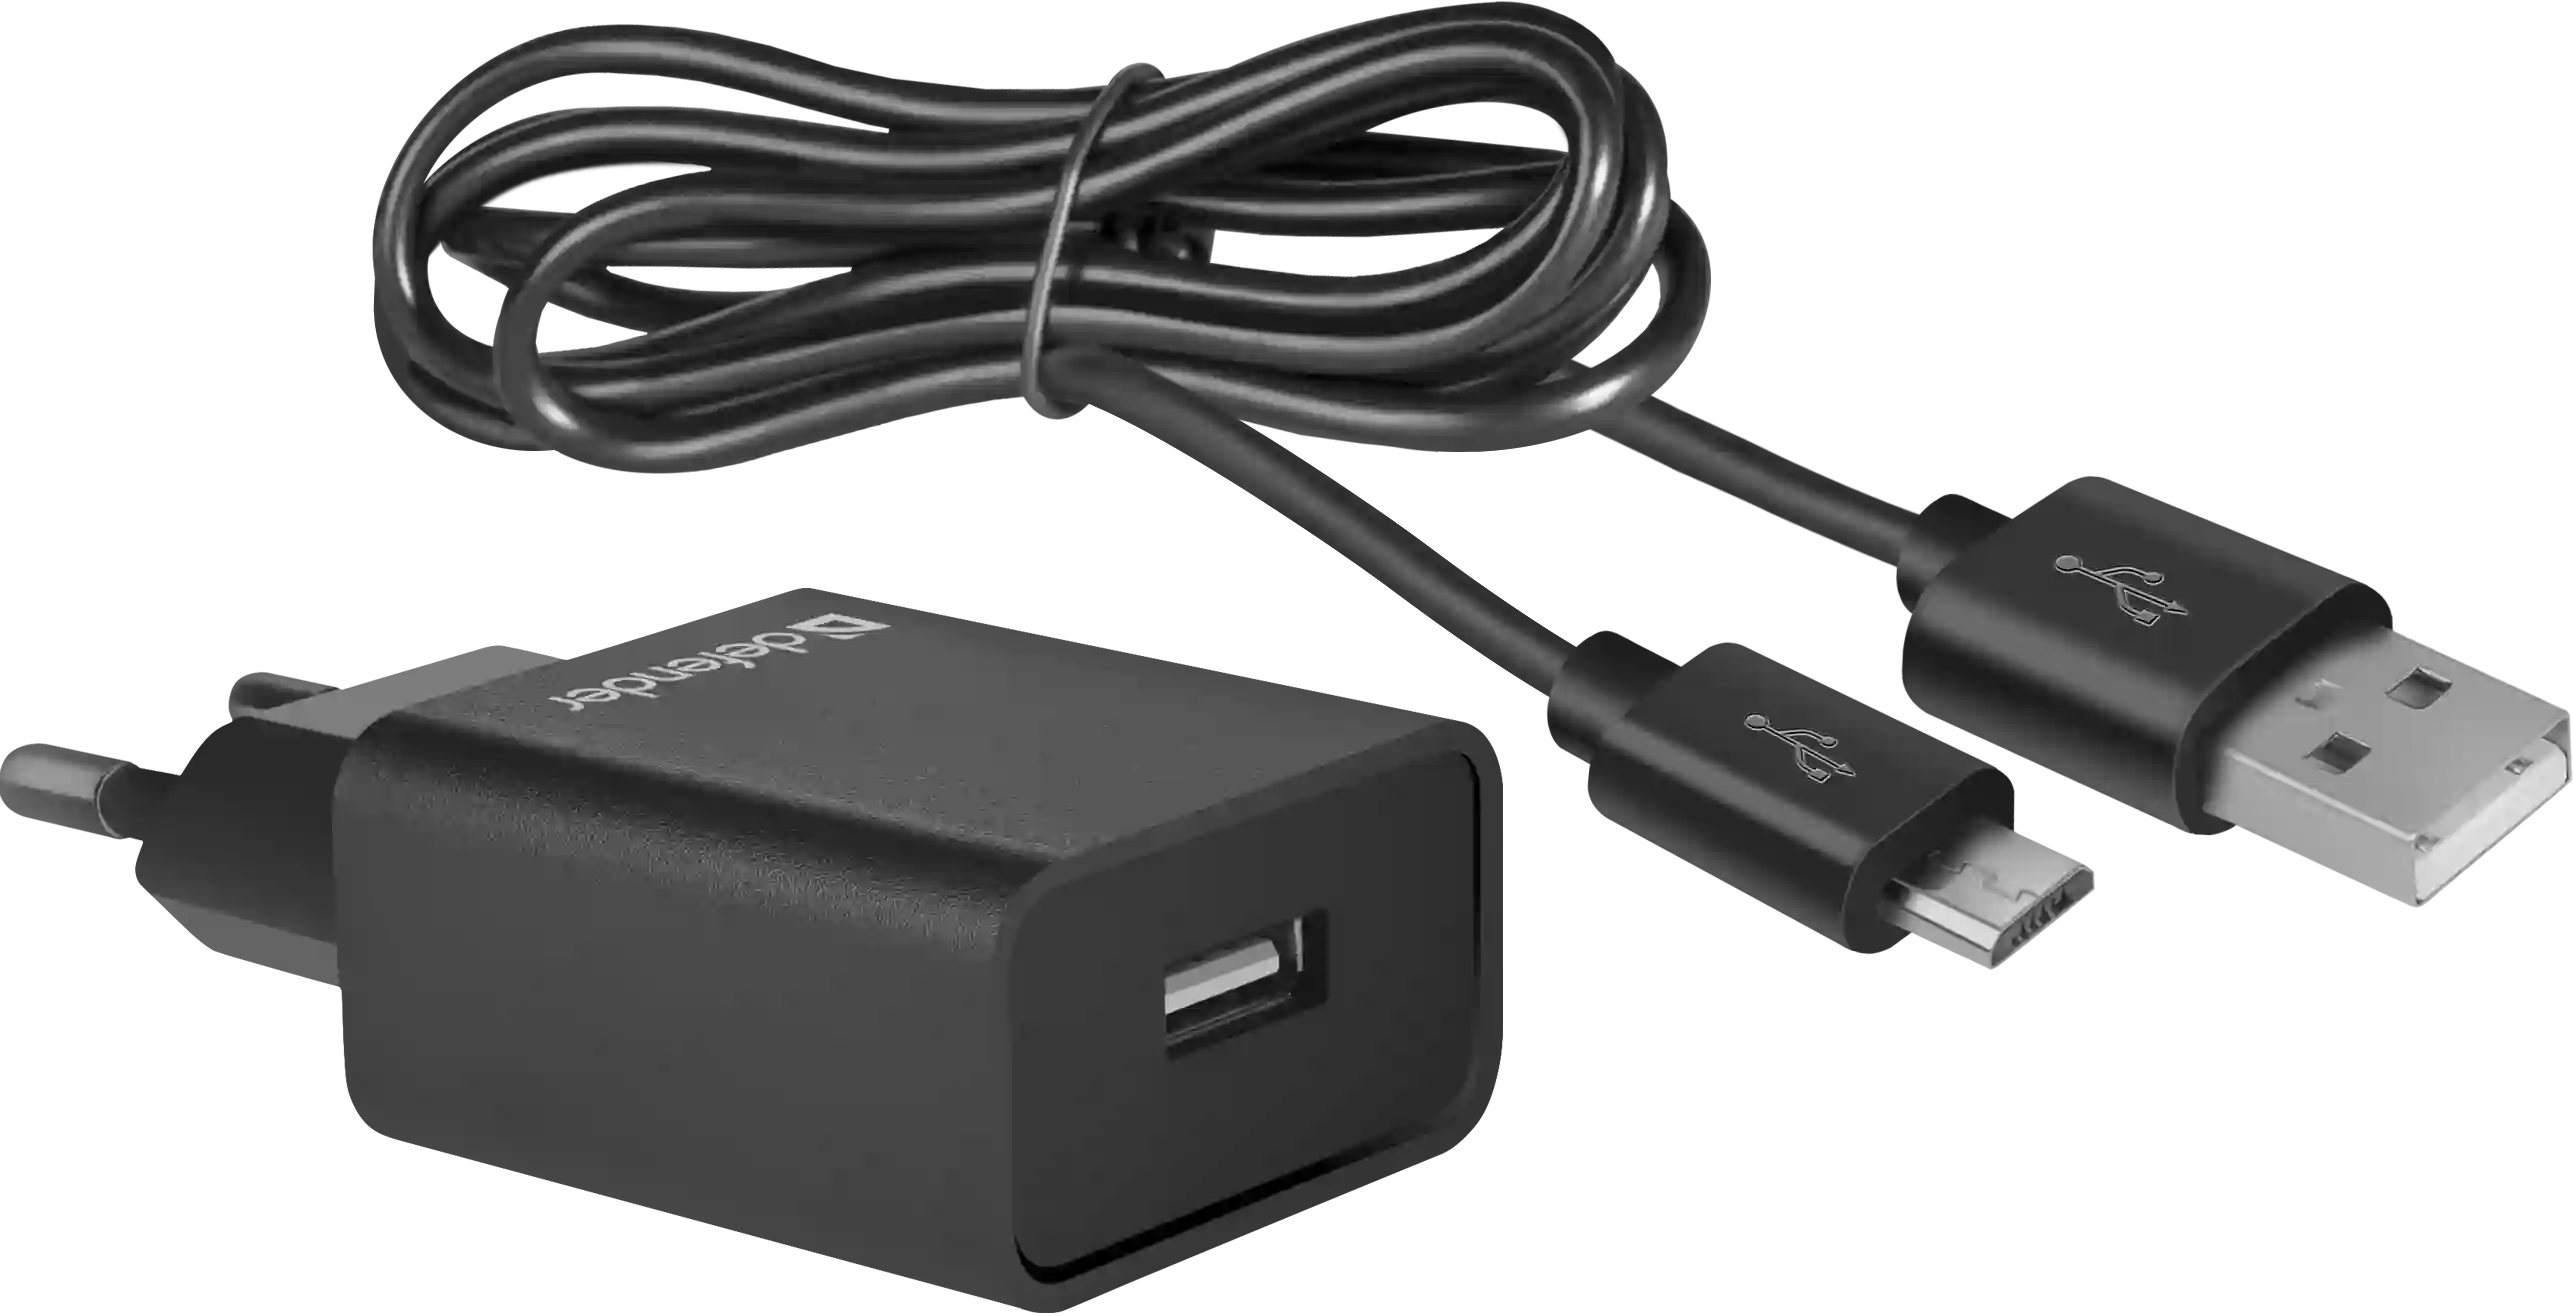 Сетевое зарядное устройство DEFENDER UPC-11 1xUSB (83556)